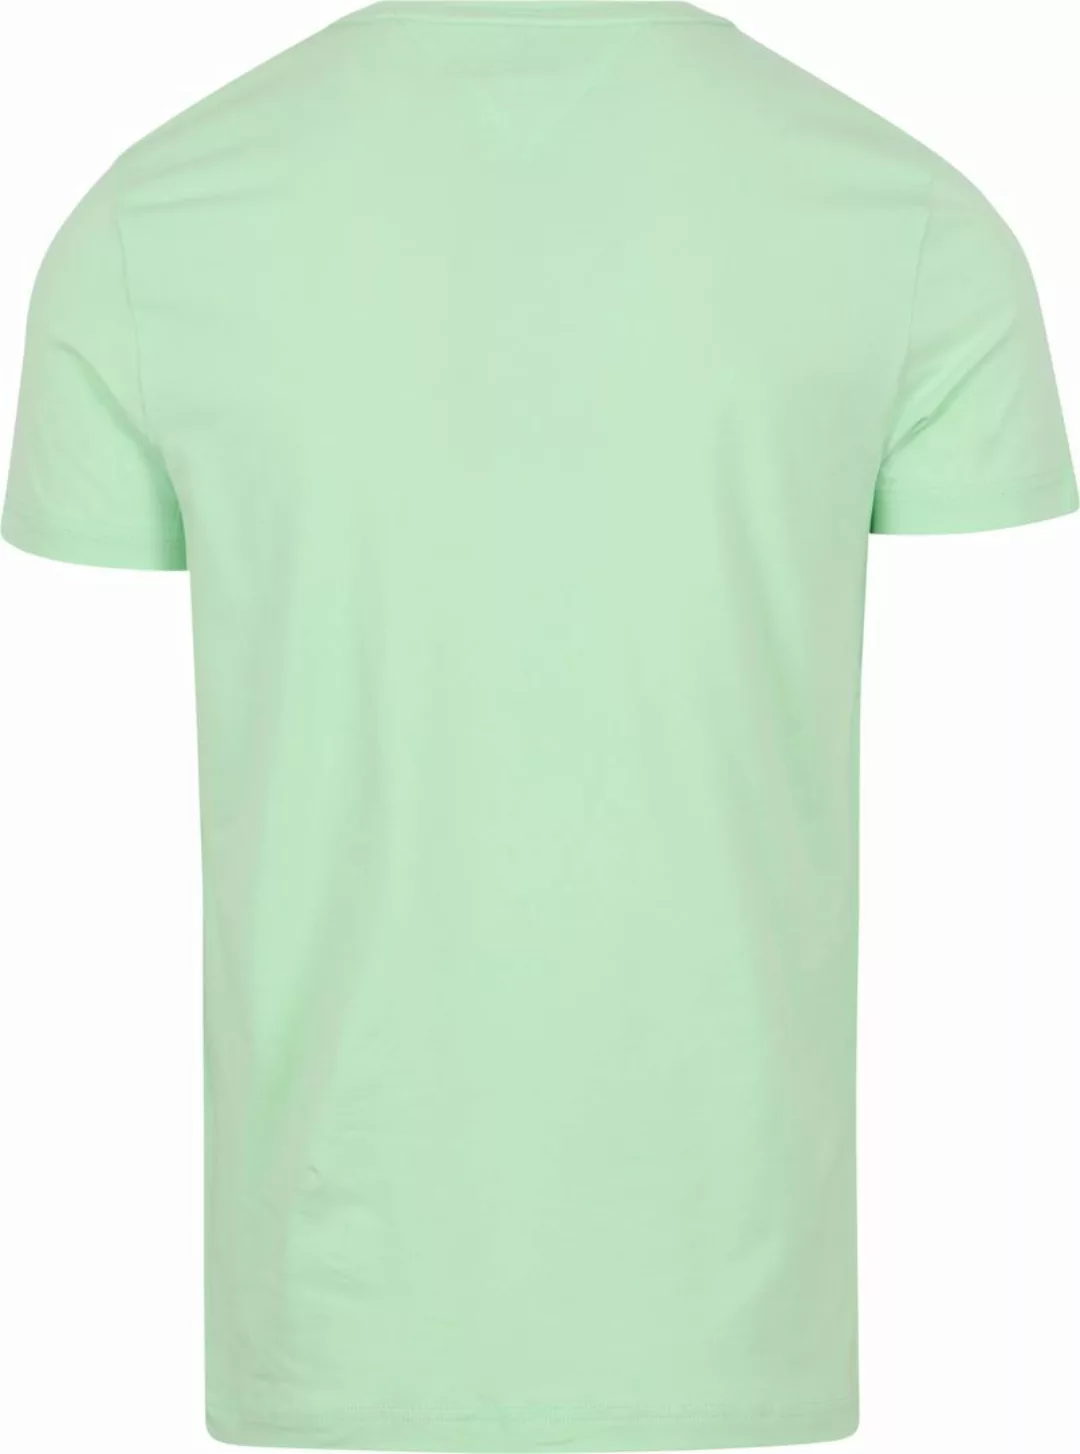 Tommy Hilfiger T-Shirt mit Logo Hellgrün - Größe XXL günstig online kaufen